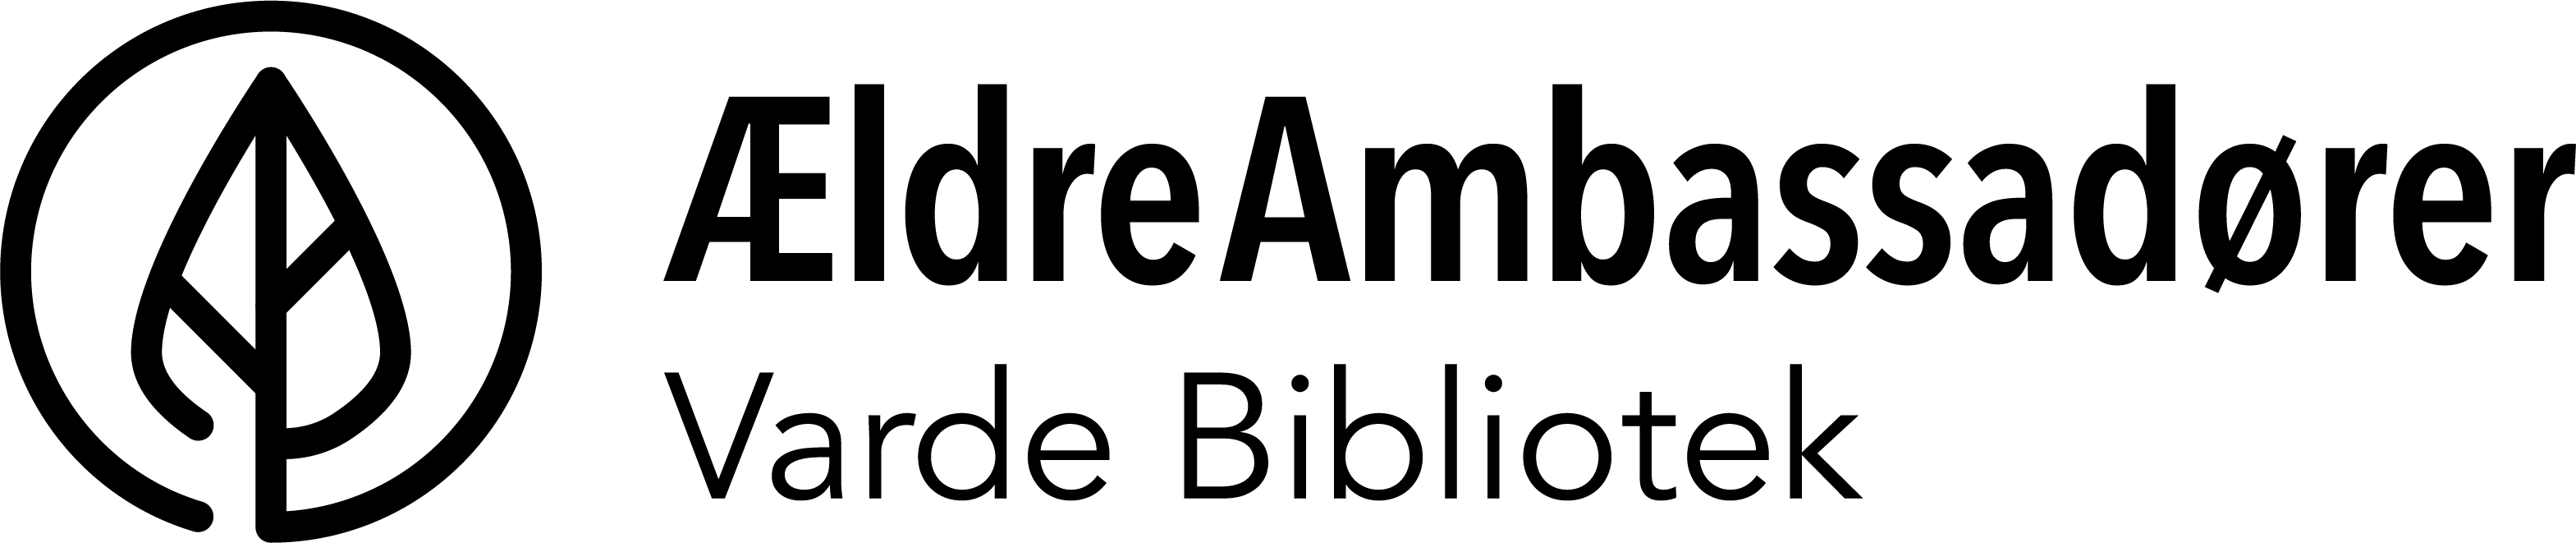 Billede af logoet for ÆldreAmbassadører